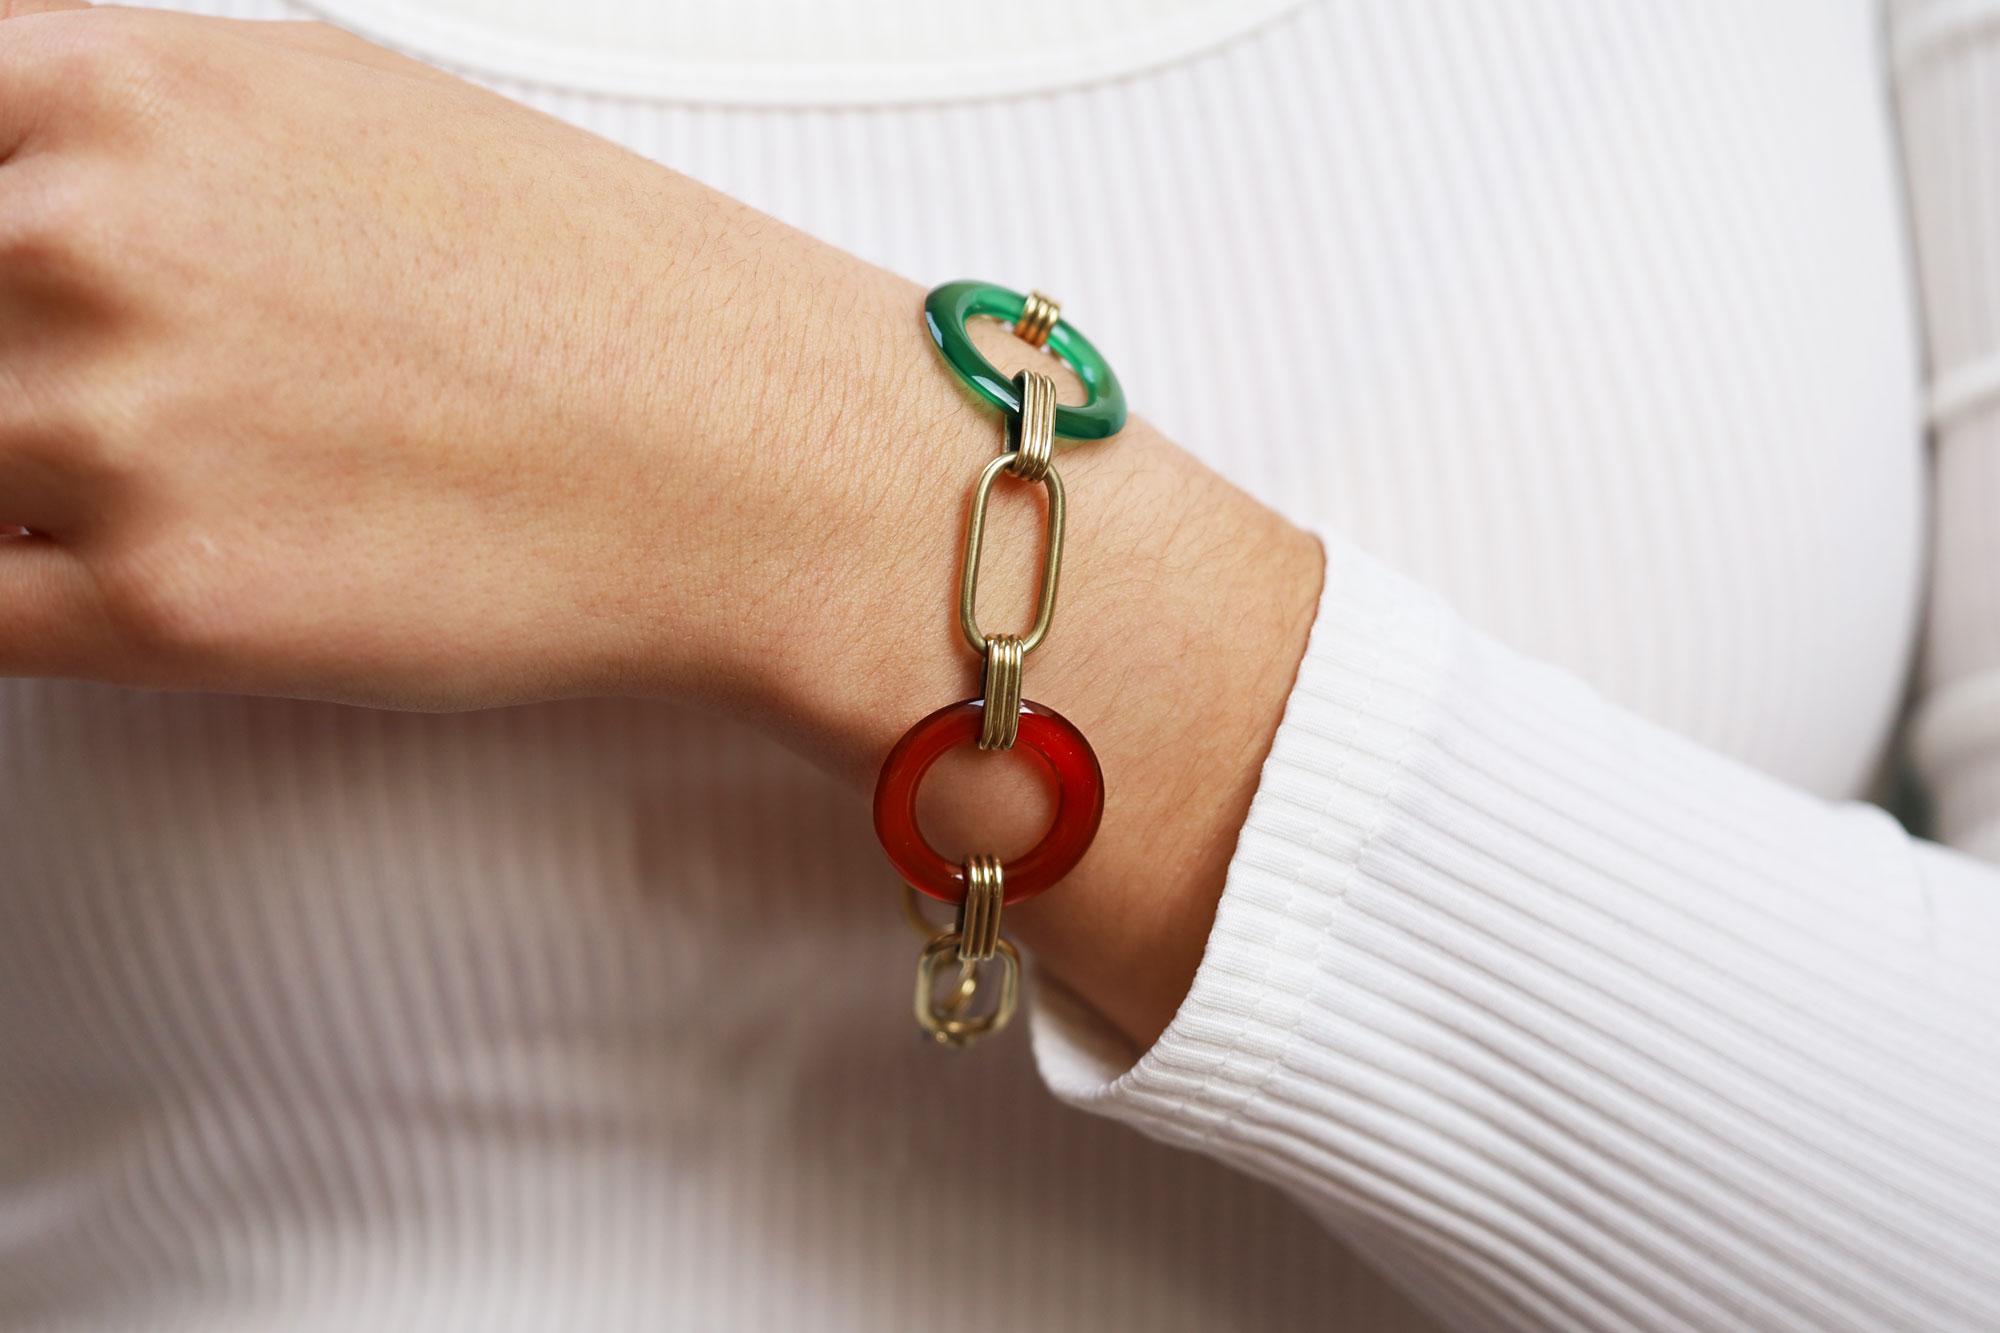 Un bracelet à maillons en pierres précieuses de style Art déco, délicieusement coloré et fantaisiste. Ce spécimen sculptural présente une combinaison intrigante de couleurs vertes et oranges reliées par des stations ovales et des boucles, le tout en